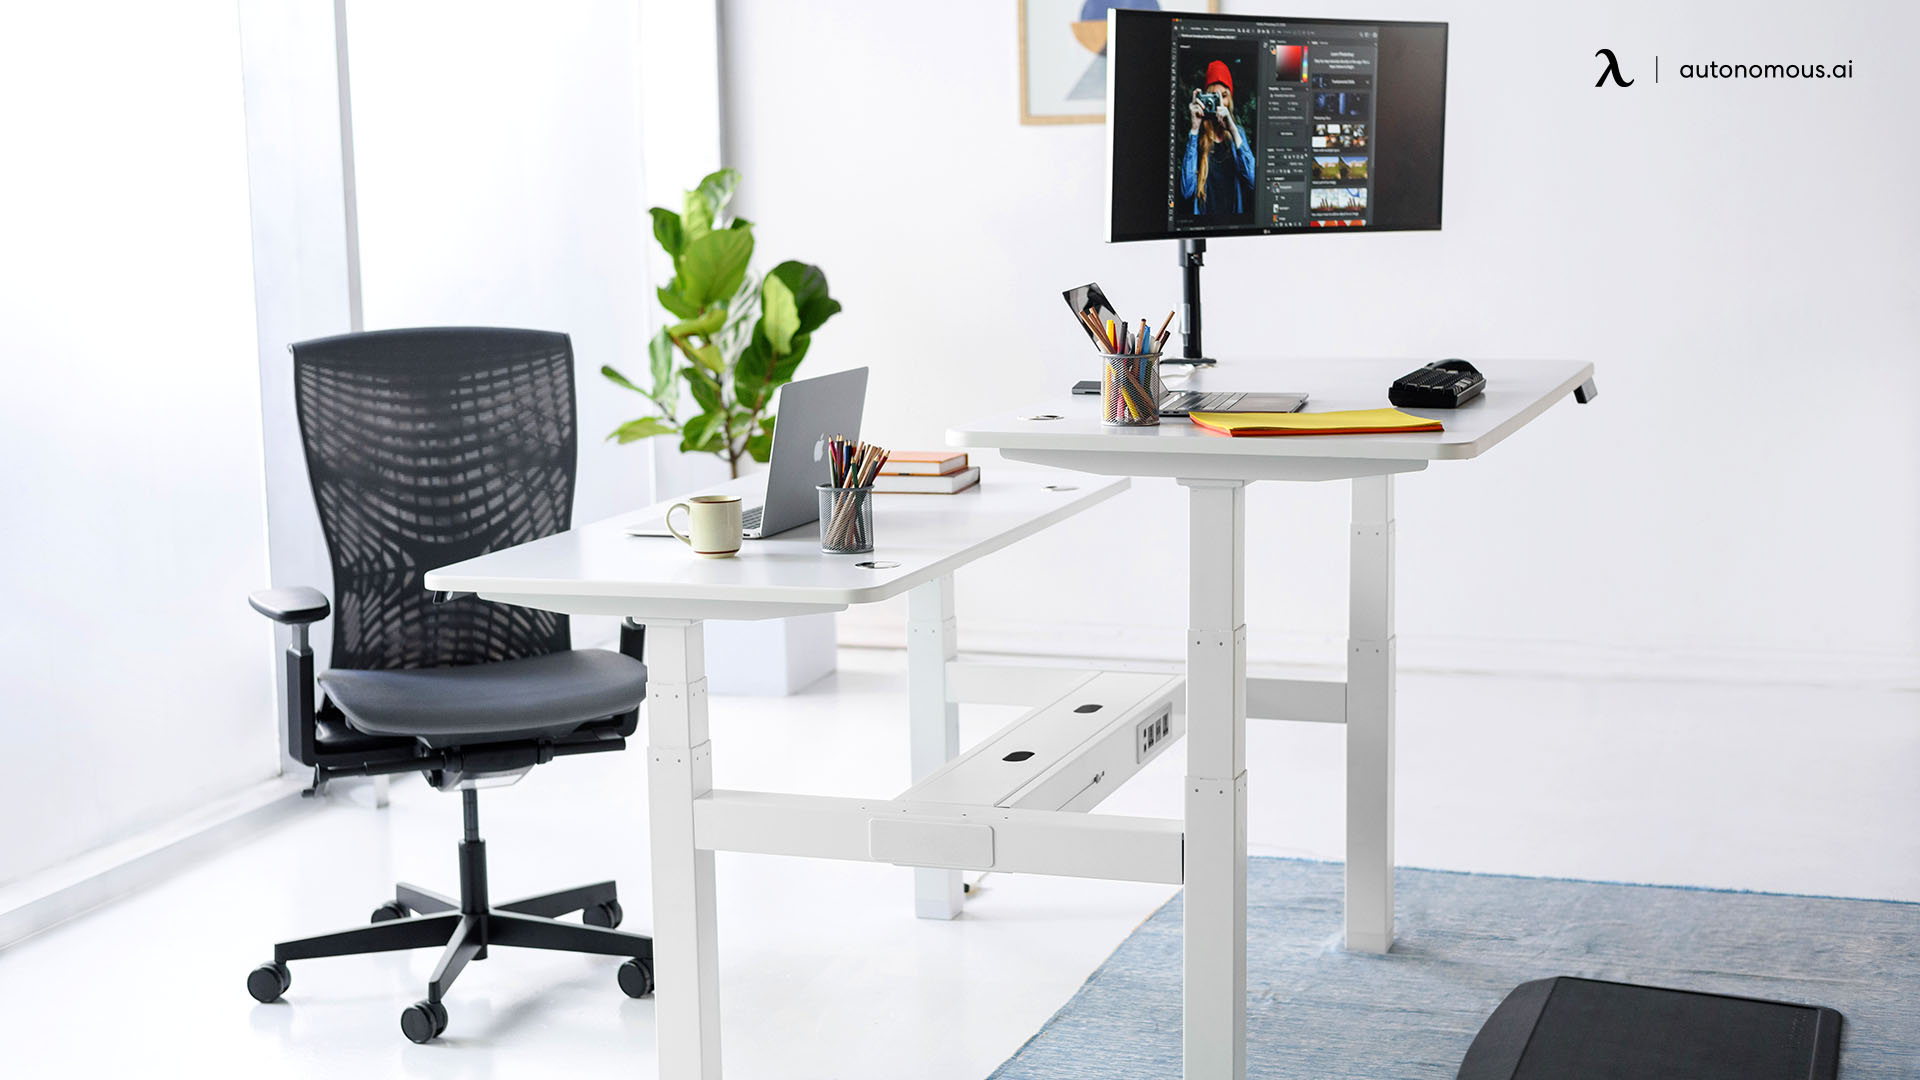 SmartDesk Core Duo ergonomic adjustable desk